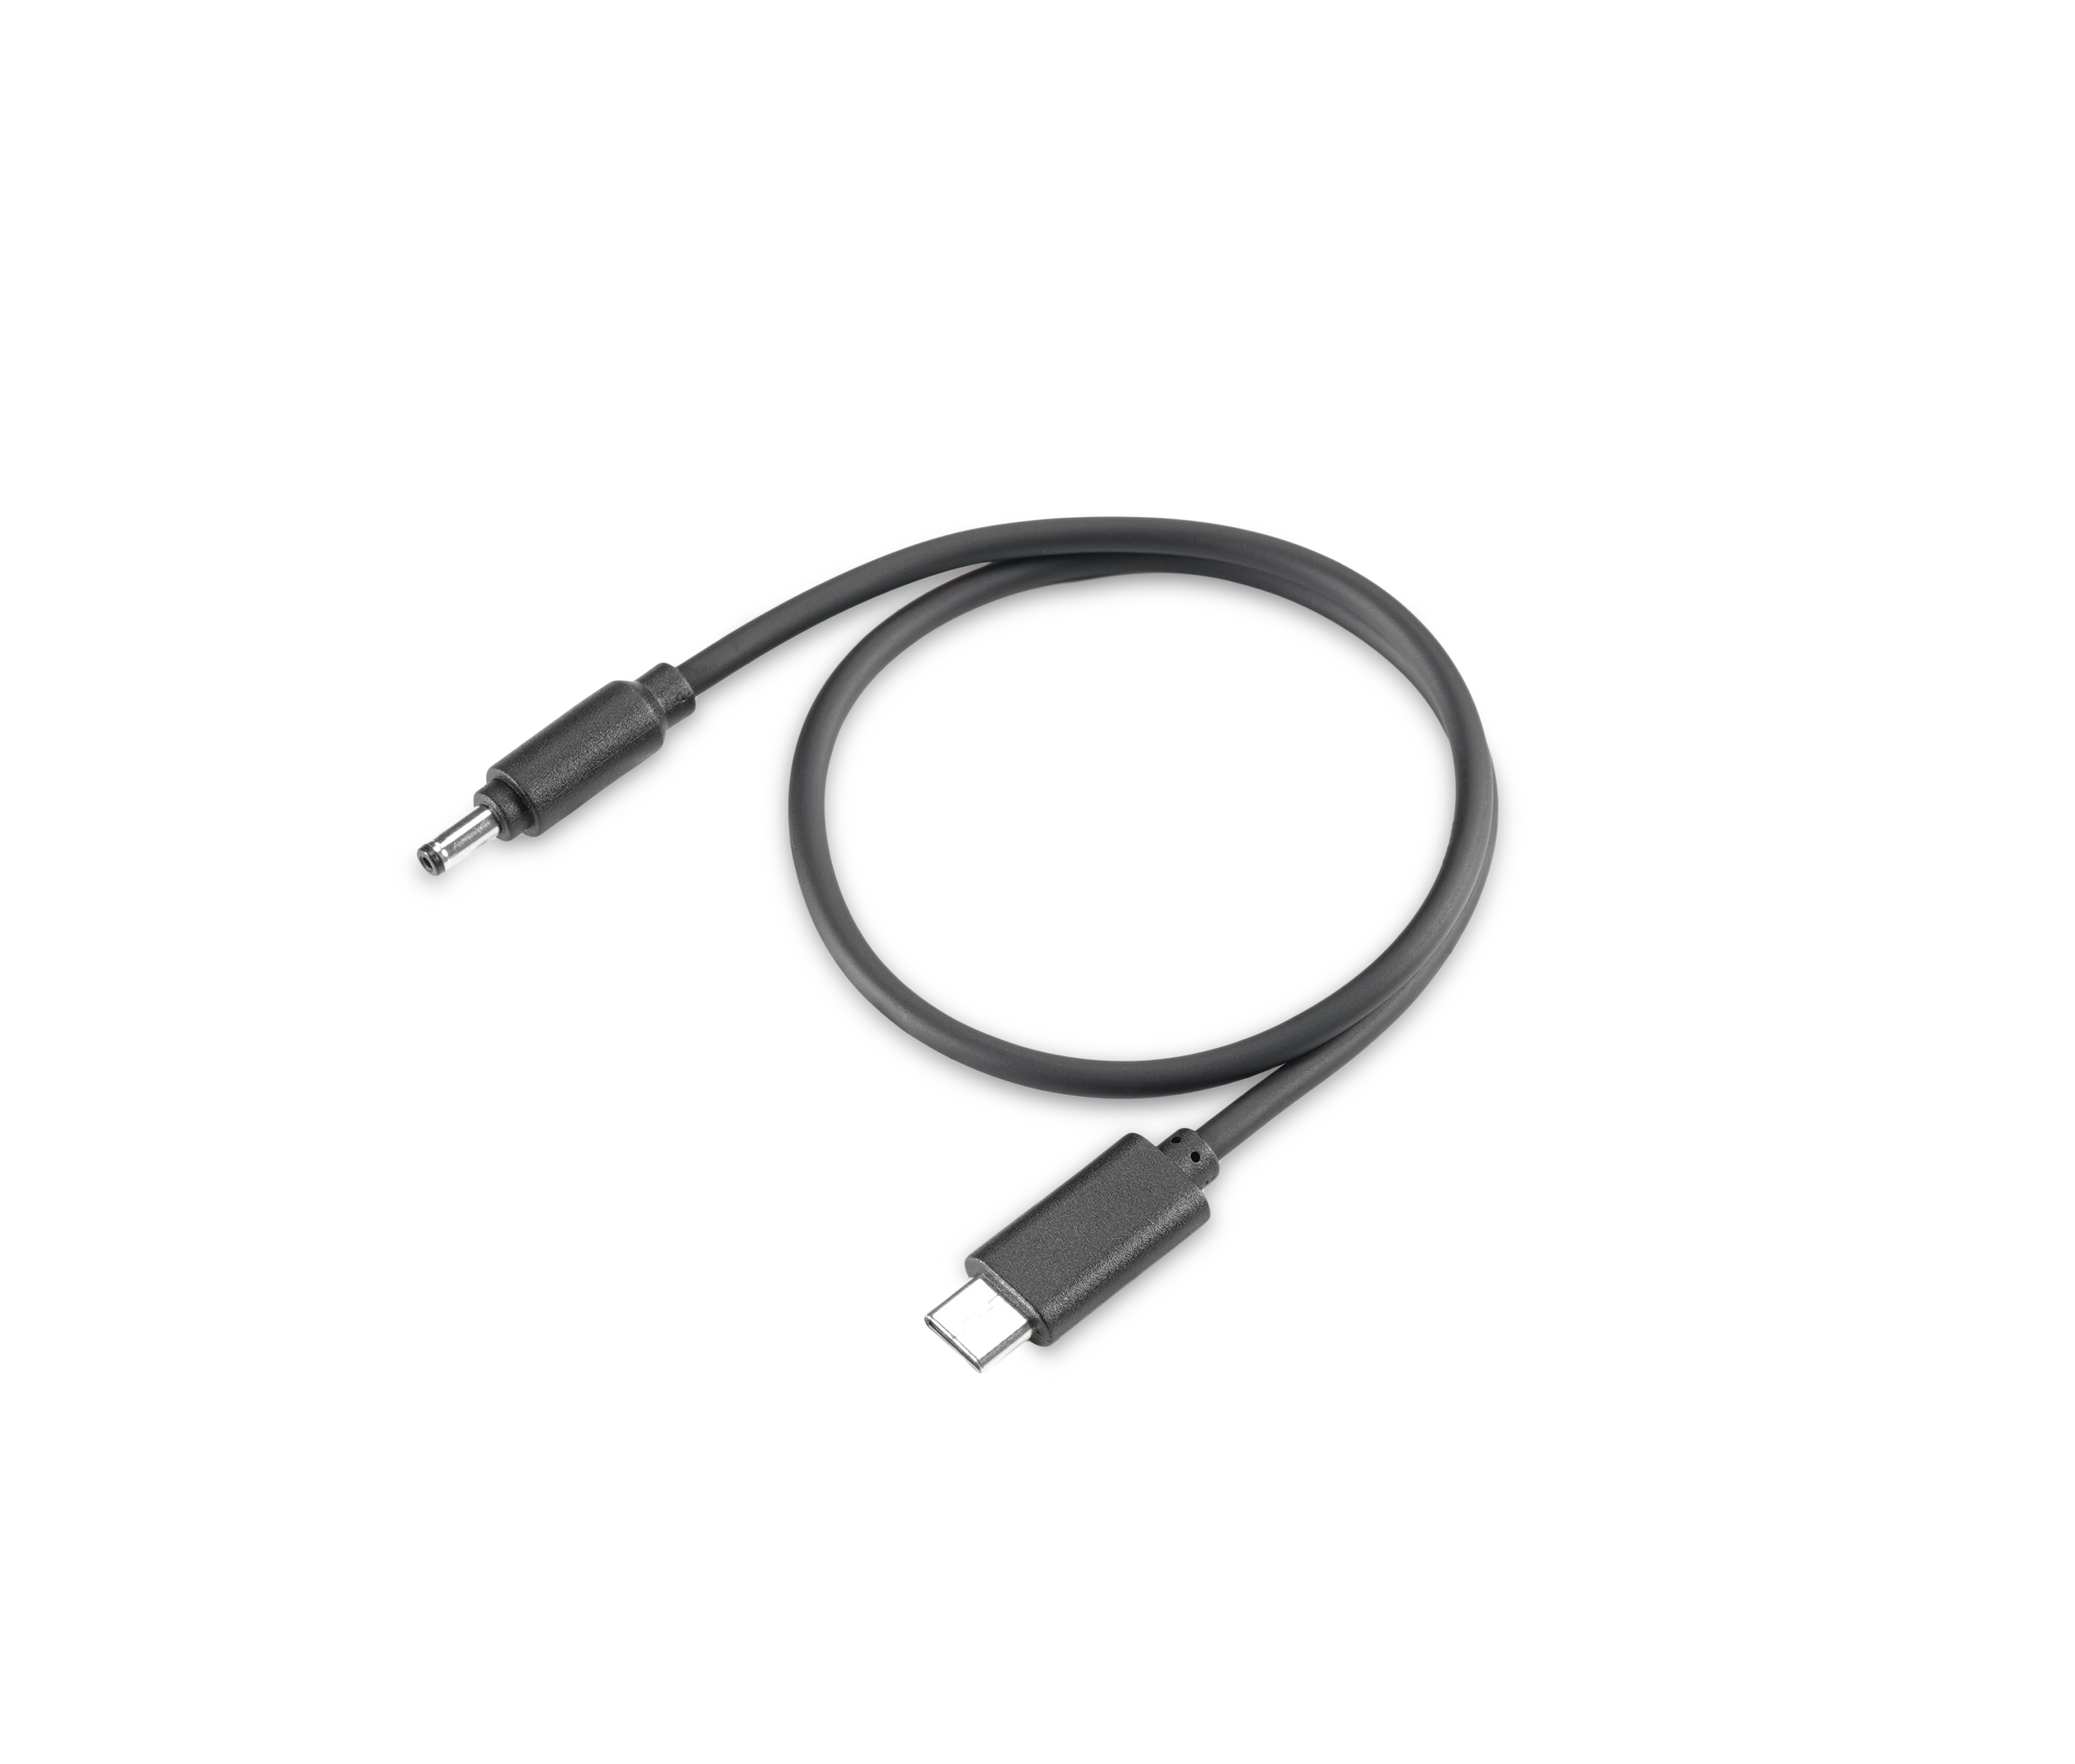 Kabel für USB TWO